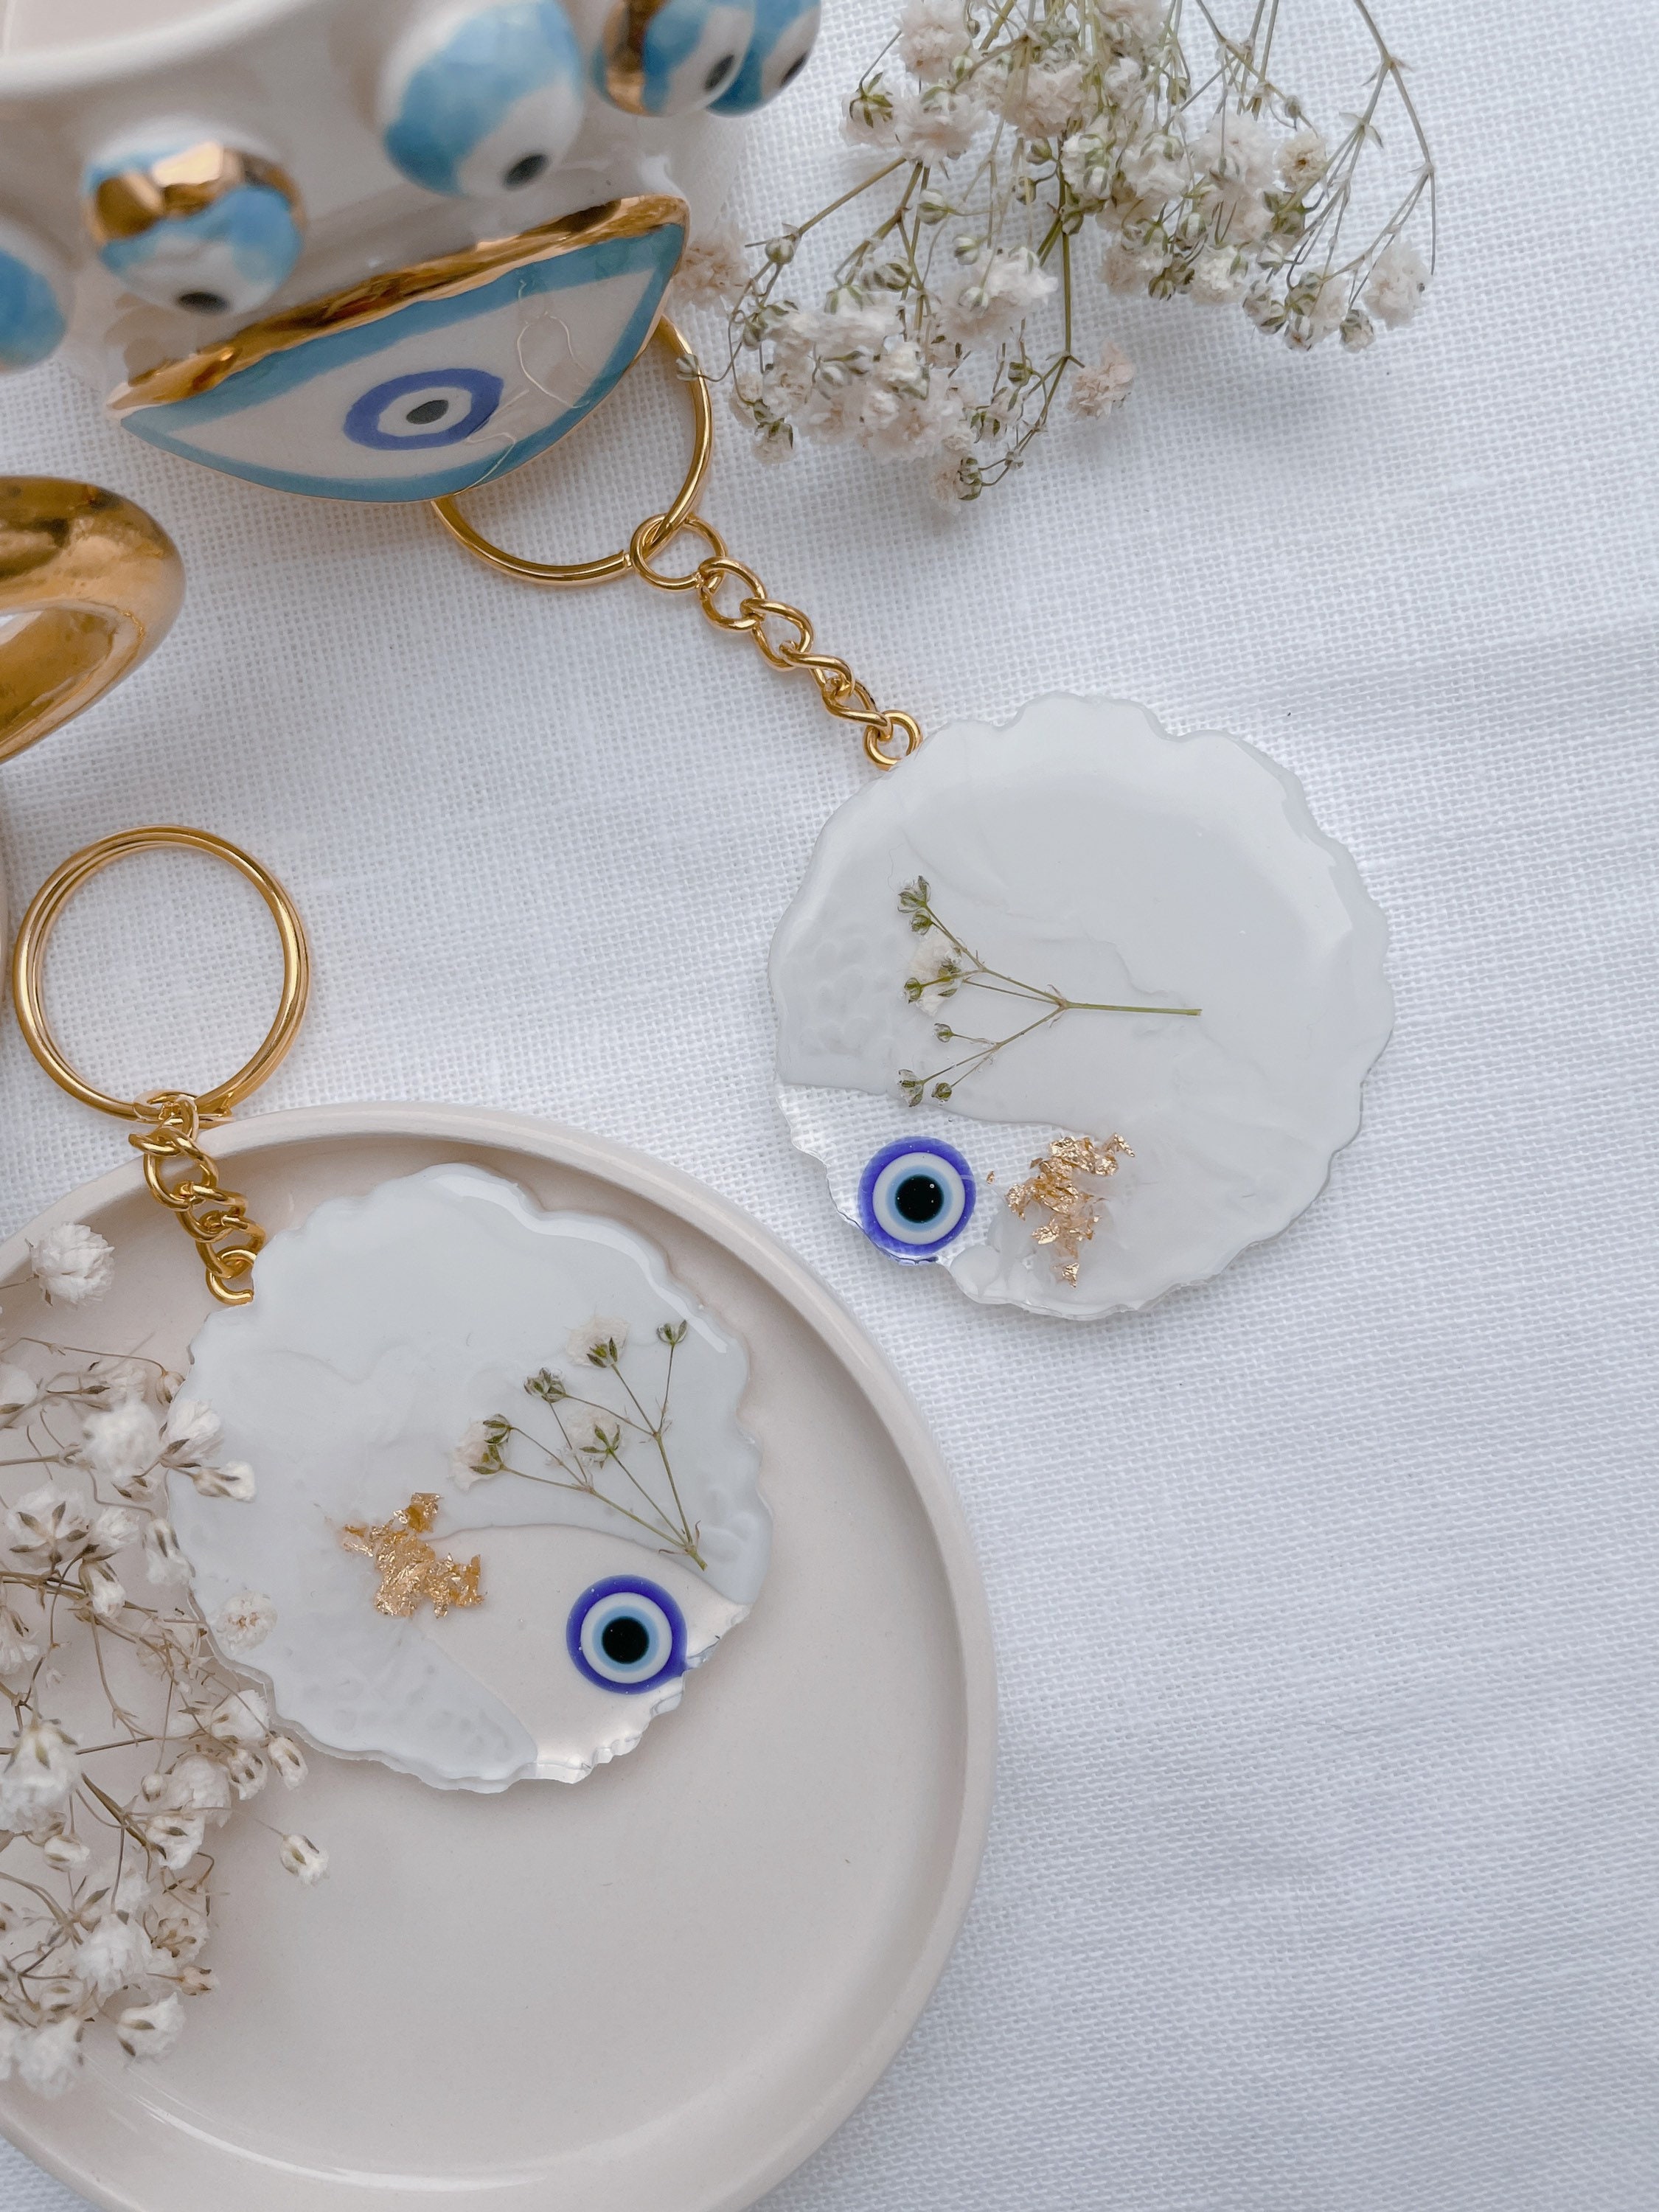 Türkische Blaue Evil Eye Eule Schlüsselbund Schlüsselanhänger Home Decor  Glas Amulett Charm Anhänger Segen Geschenk